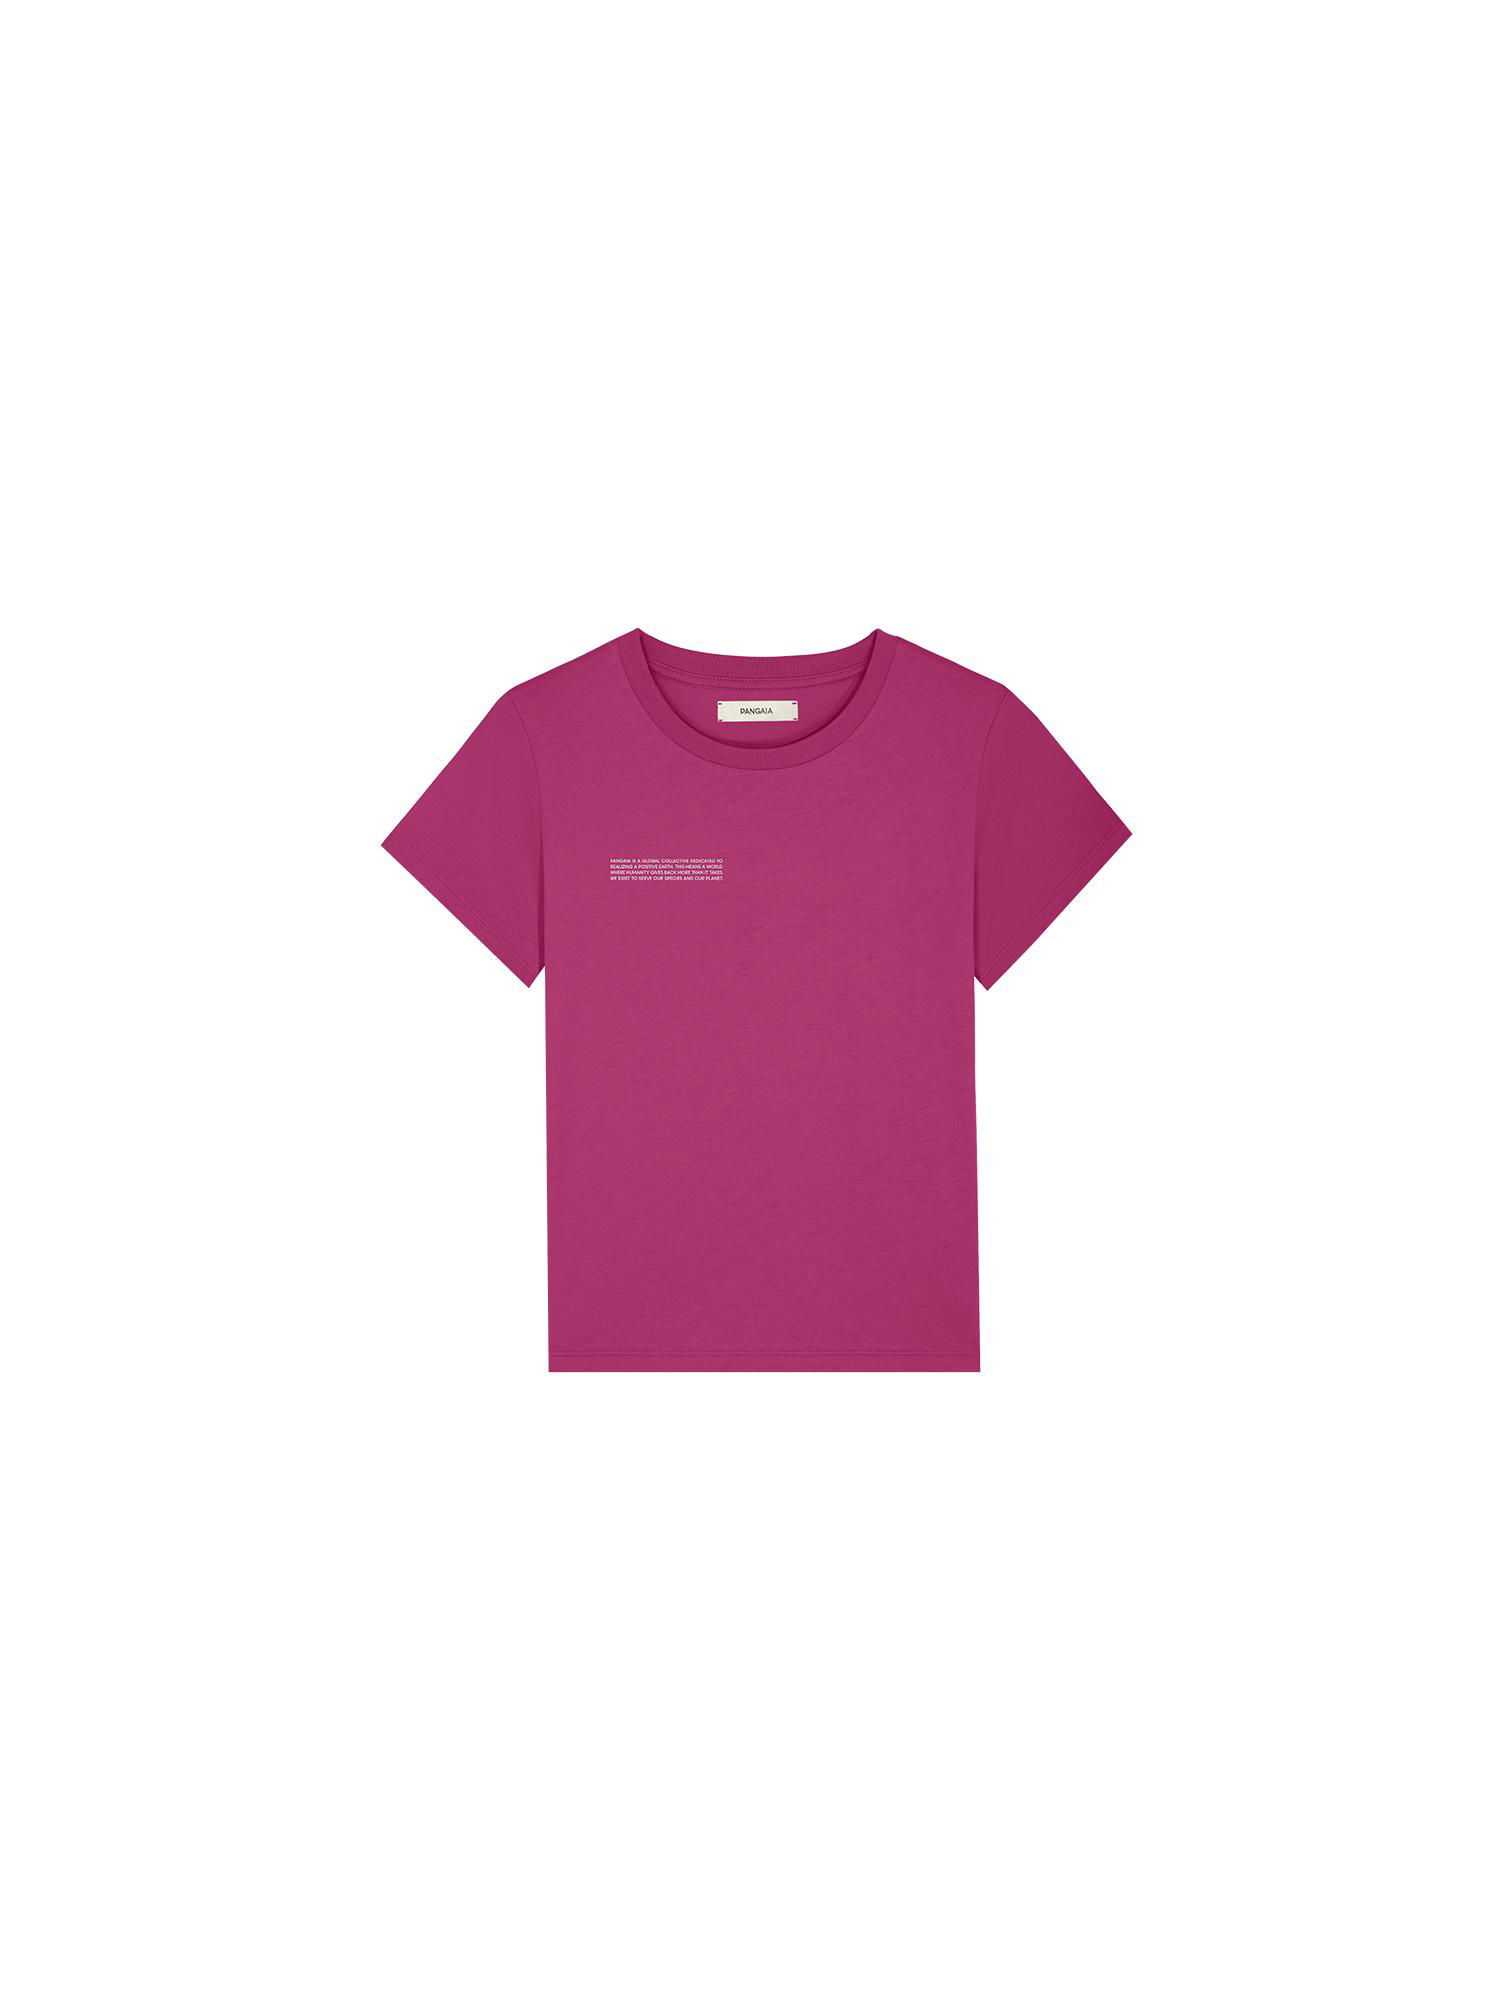 Kids' 365 Midweight T-Shirt—berry-purple by PANGAIA